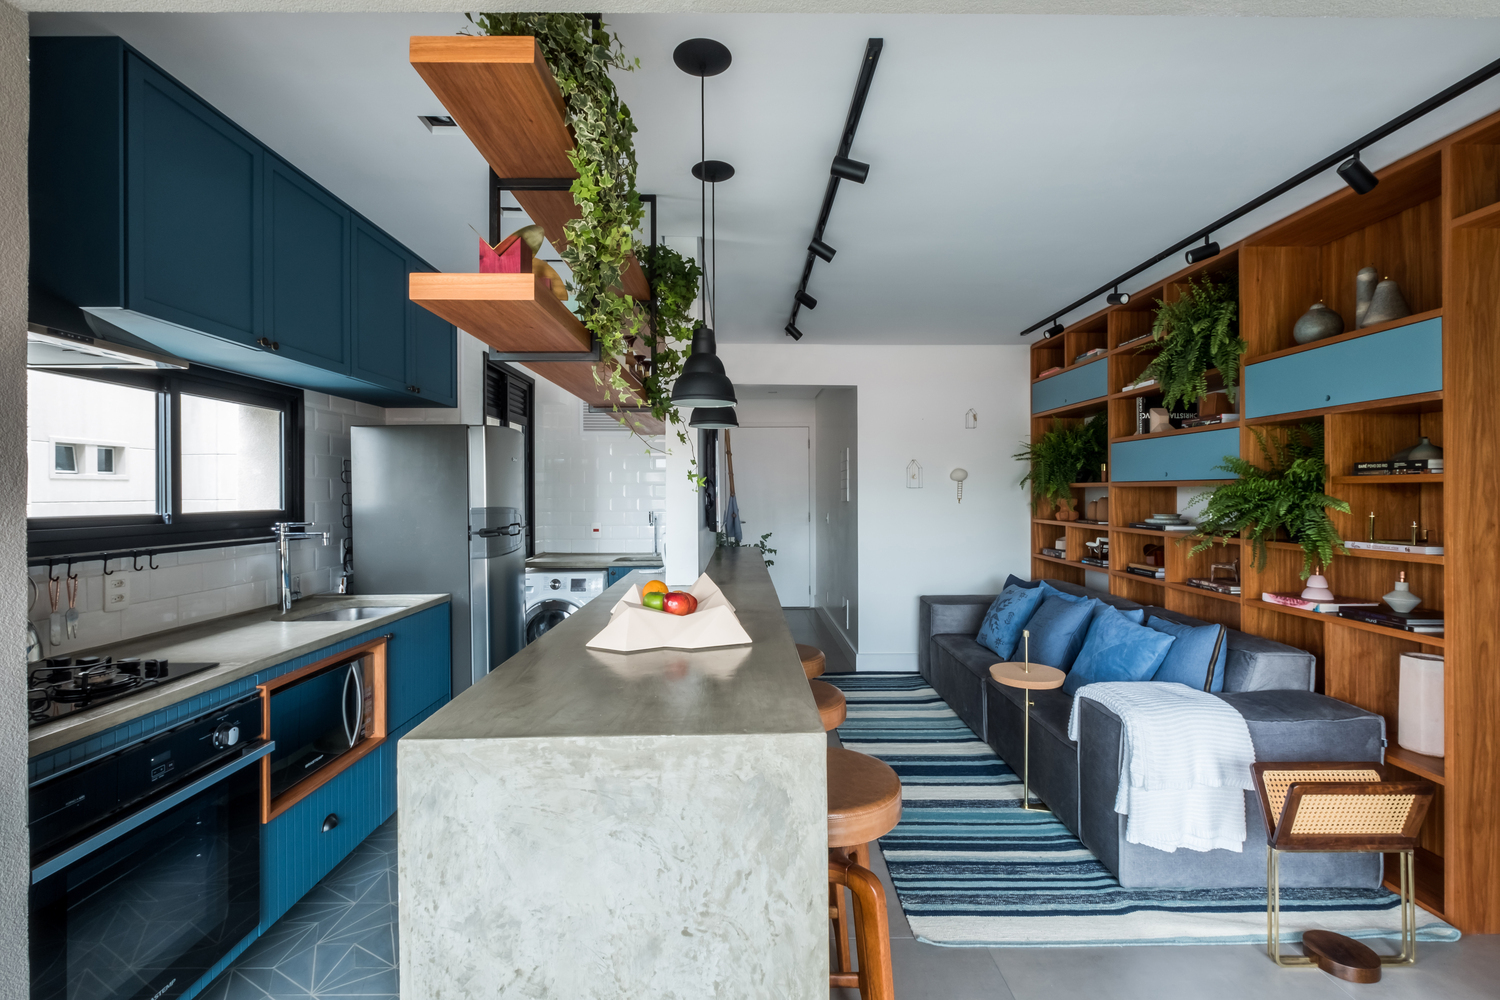 Hình ảnh phòng bếp hiện đại với hệ rtreo tường màu xanh dương, cửa sổ kính trong suốt, bồn gỗ trồng cây trần, đối diện là p hòng khách.